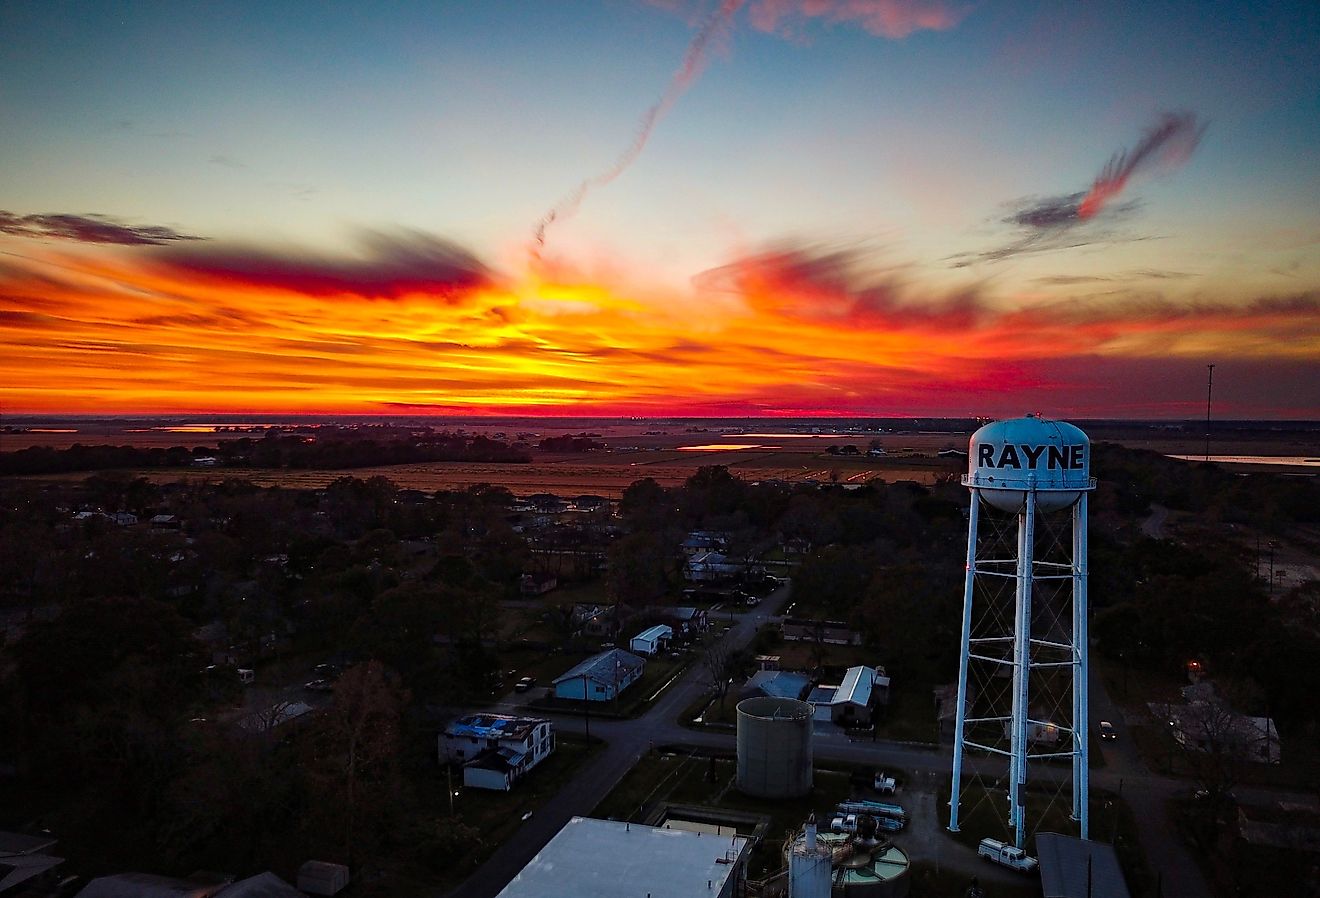 Rayne, Louisiana. Beautiful Fire Sunset!